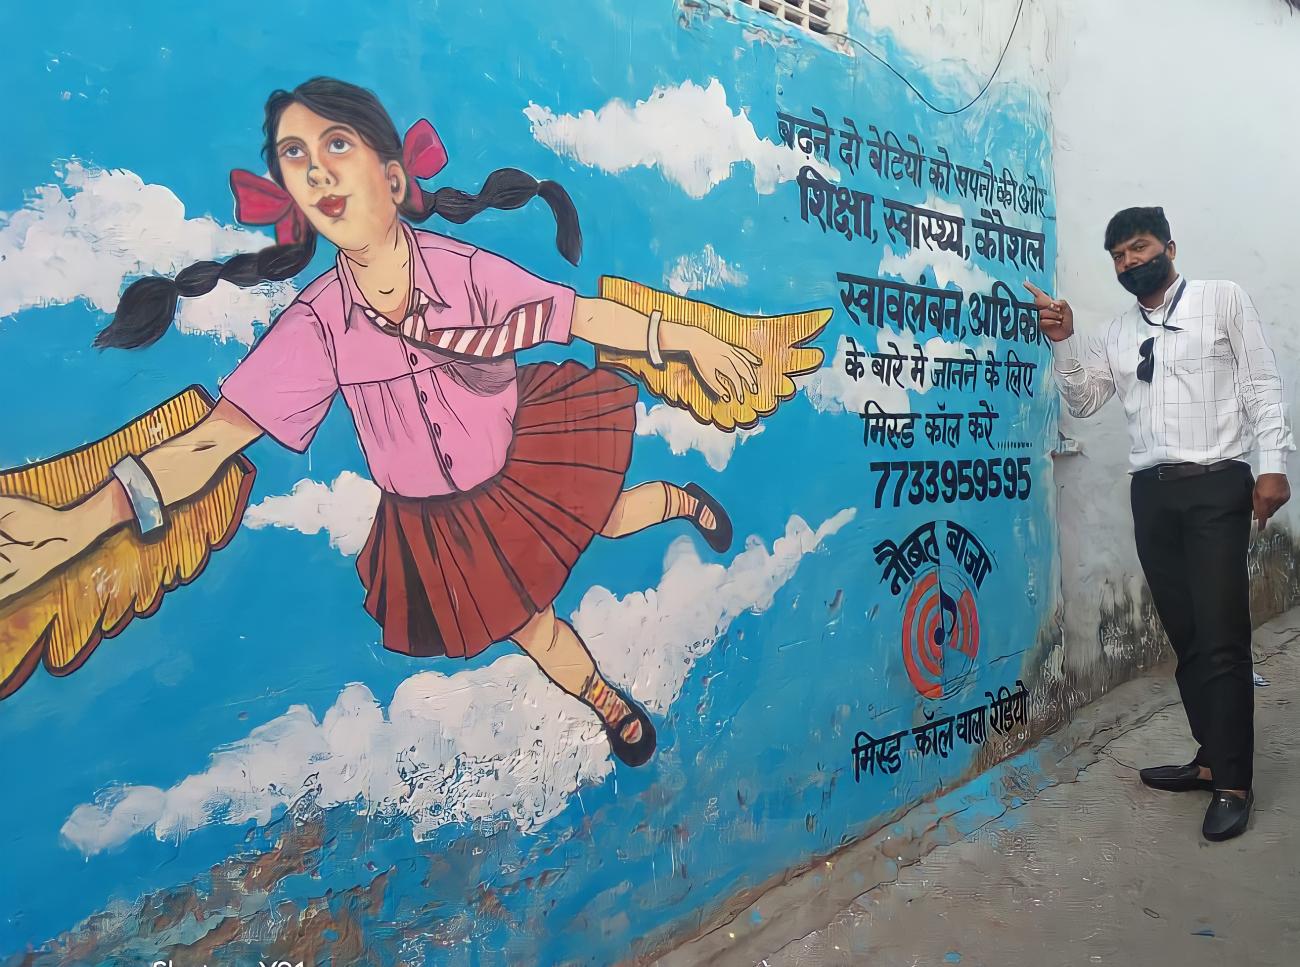 Un homme se tient debout à côté d'une peinture murale montrant une fillette aux cheveux longs et tressés s'envolant dans le ciel en déployant des ailes.